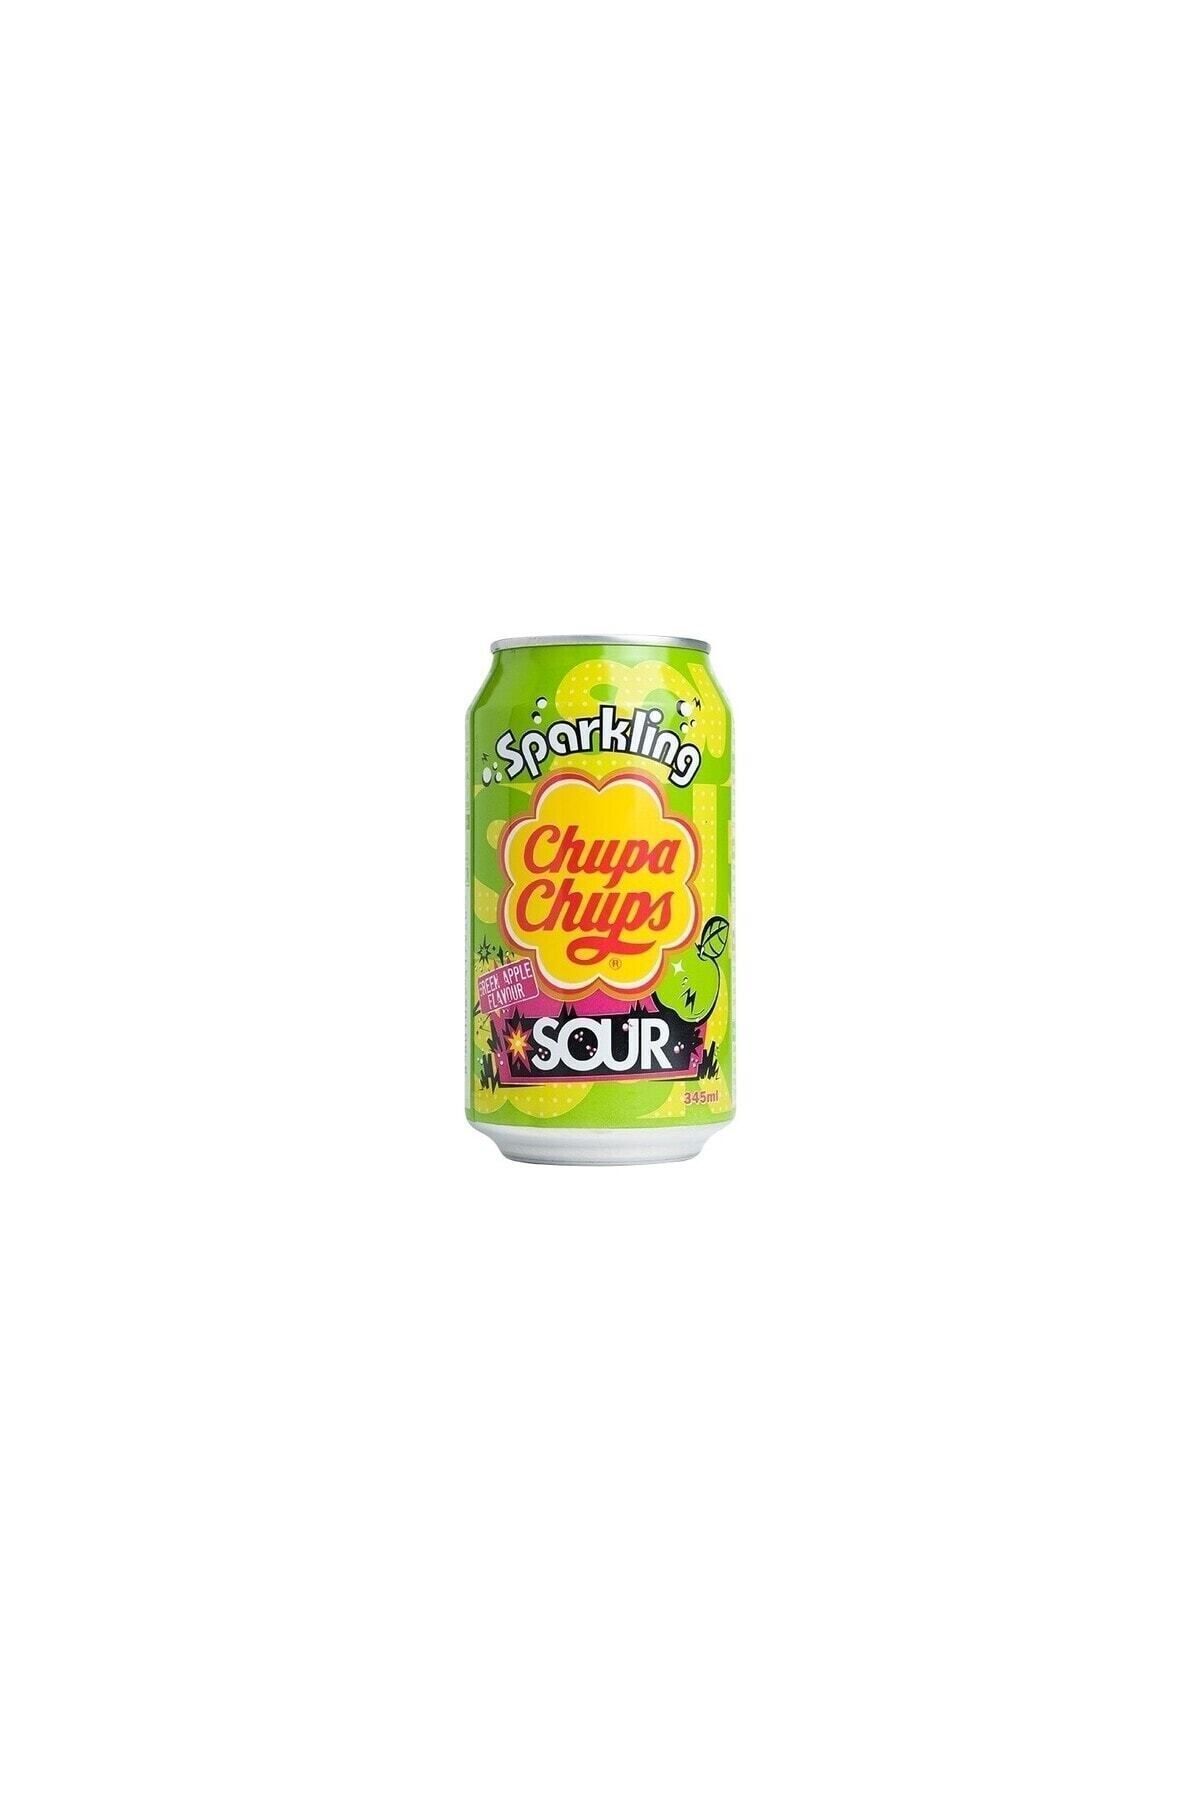 Chupa Chups - Sparkling Green Apple Flavour Sour